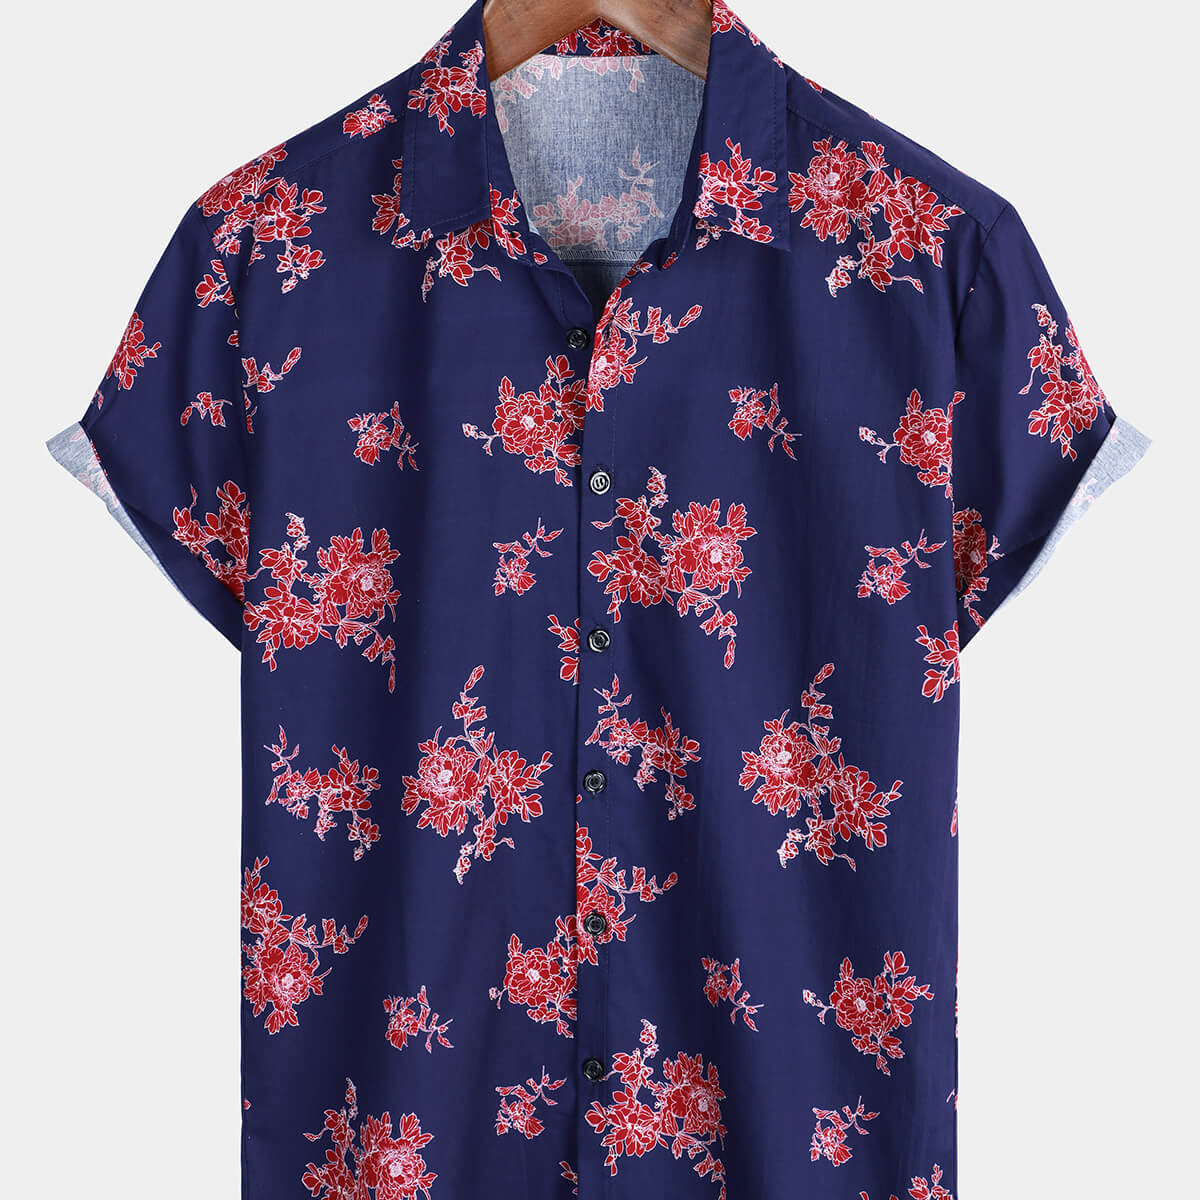 Men's Blue Floral Hawaiian Flower Print Short Sleeve Shirt